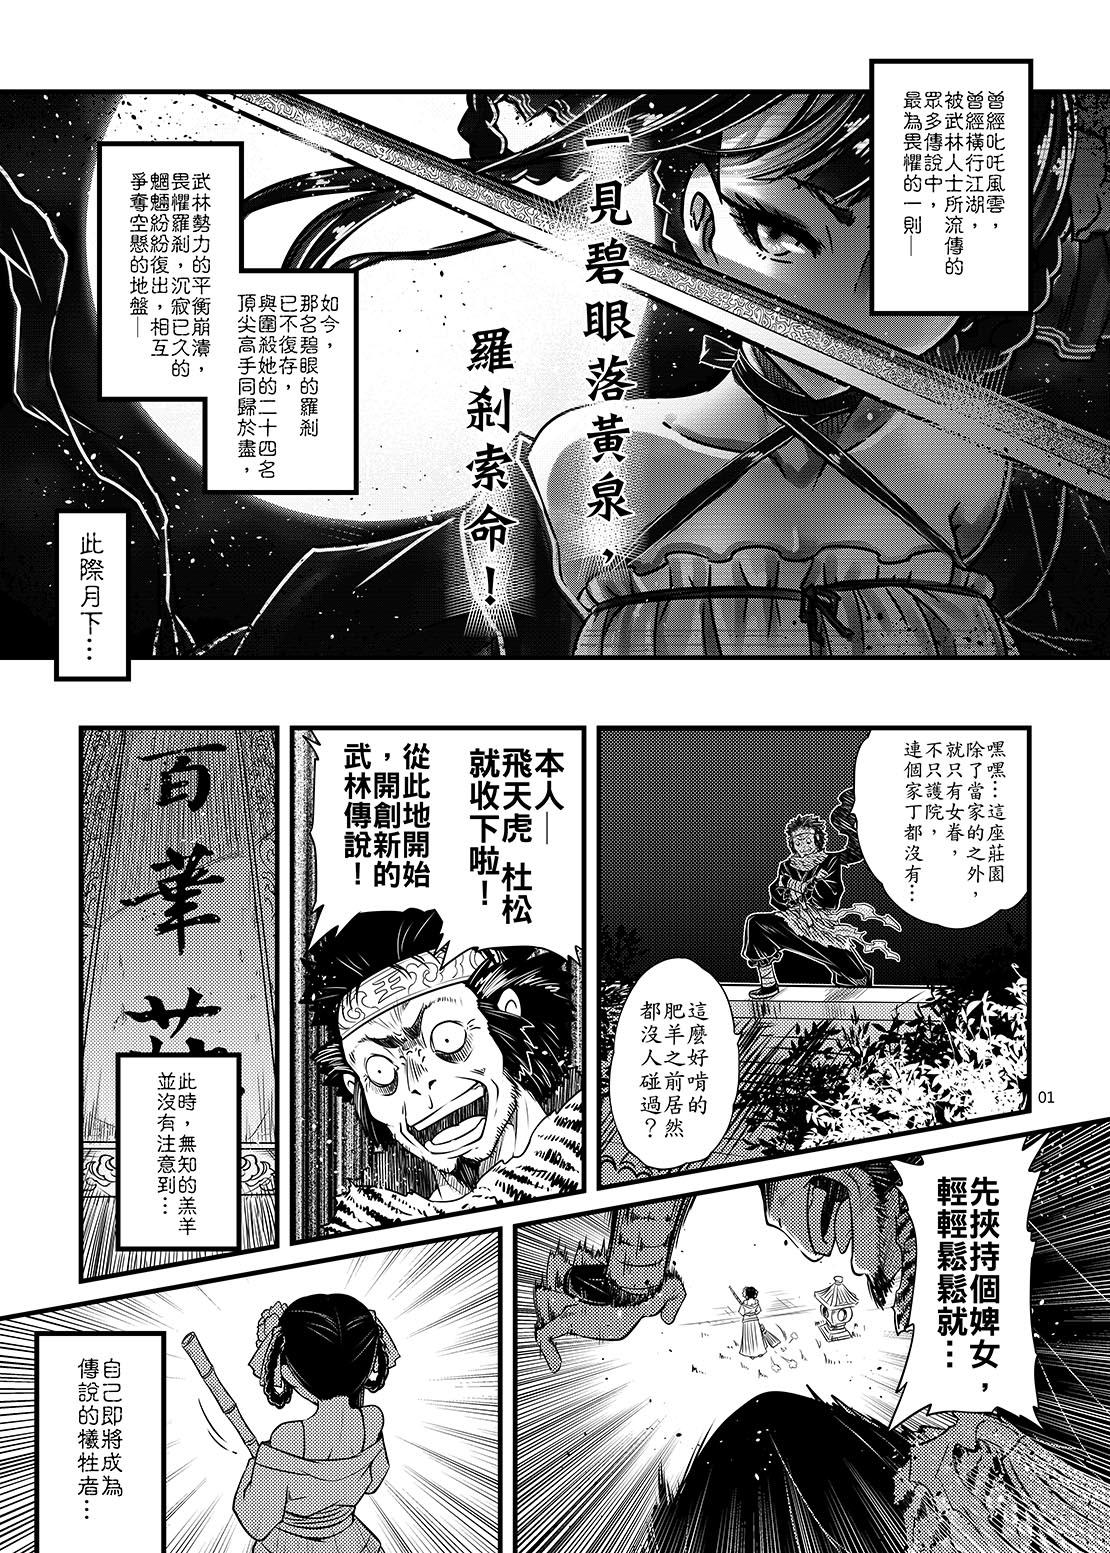 Legs Hyakkasou2《壮絶!海棠夫人の伝説》 - Original Dick Sucking - Page 2